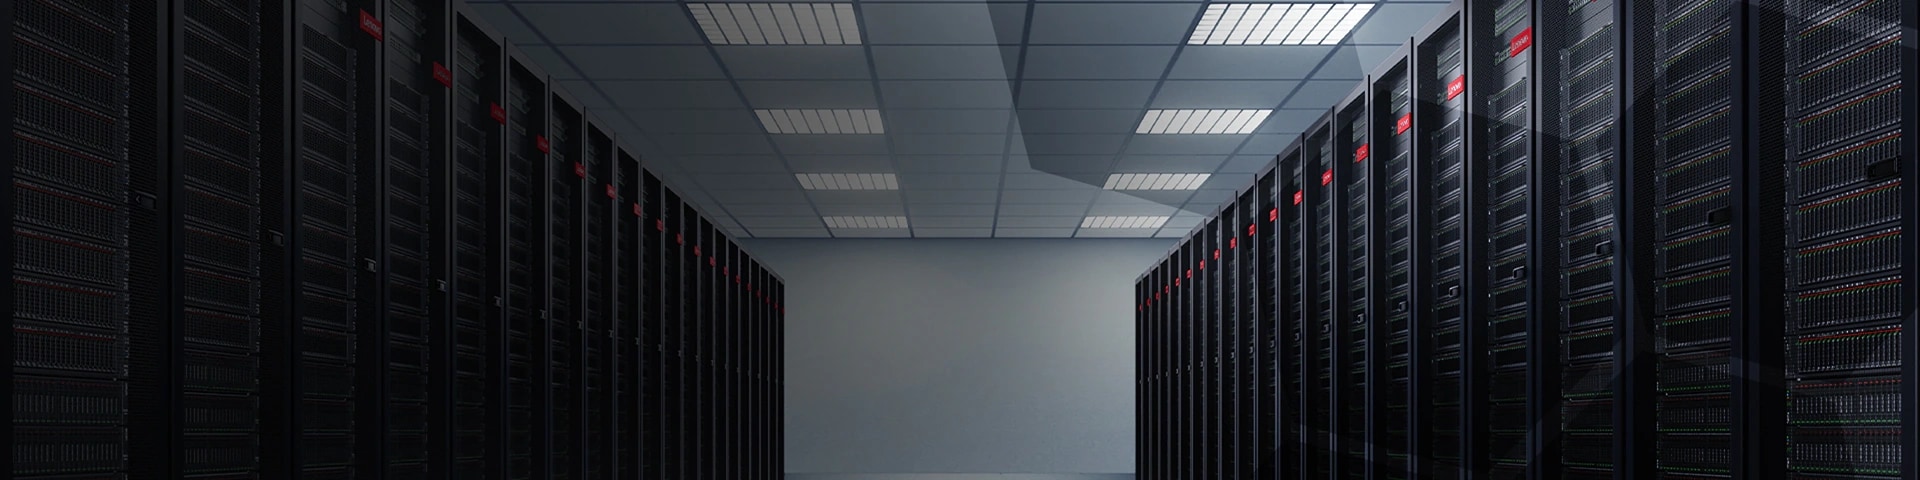 Implementation Services - Lenovo Data Center Racks